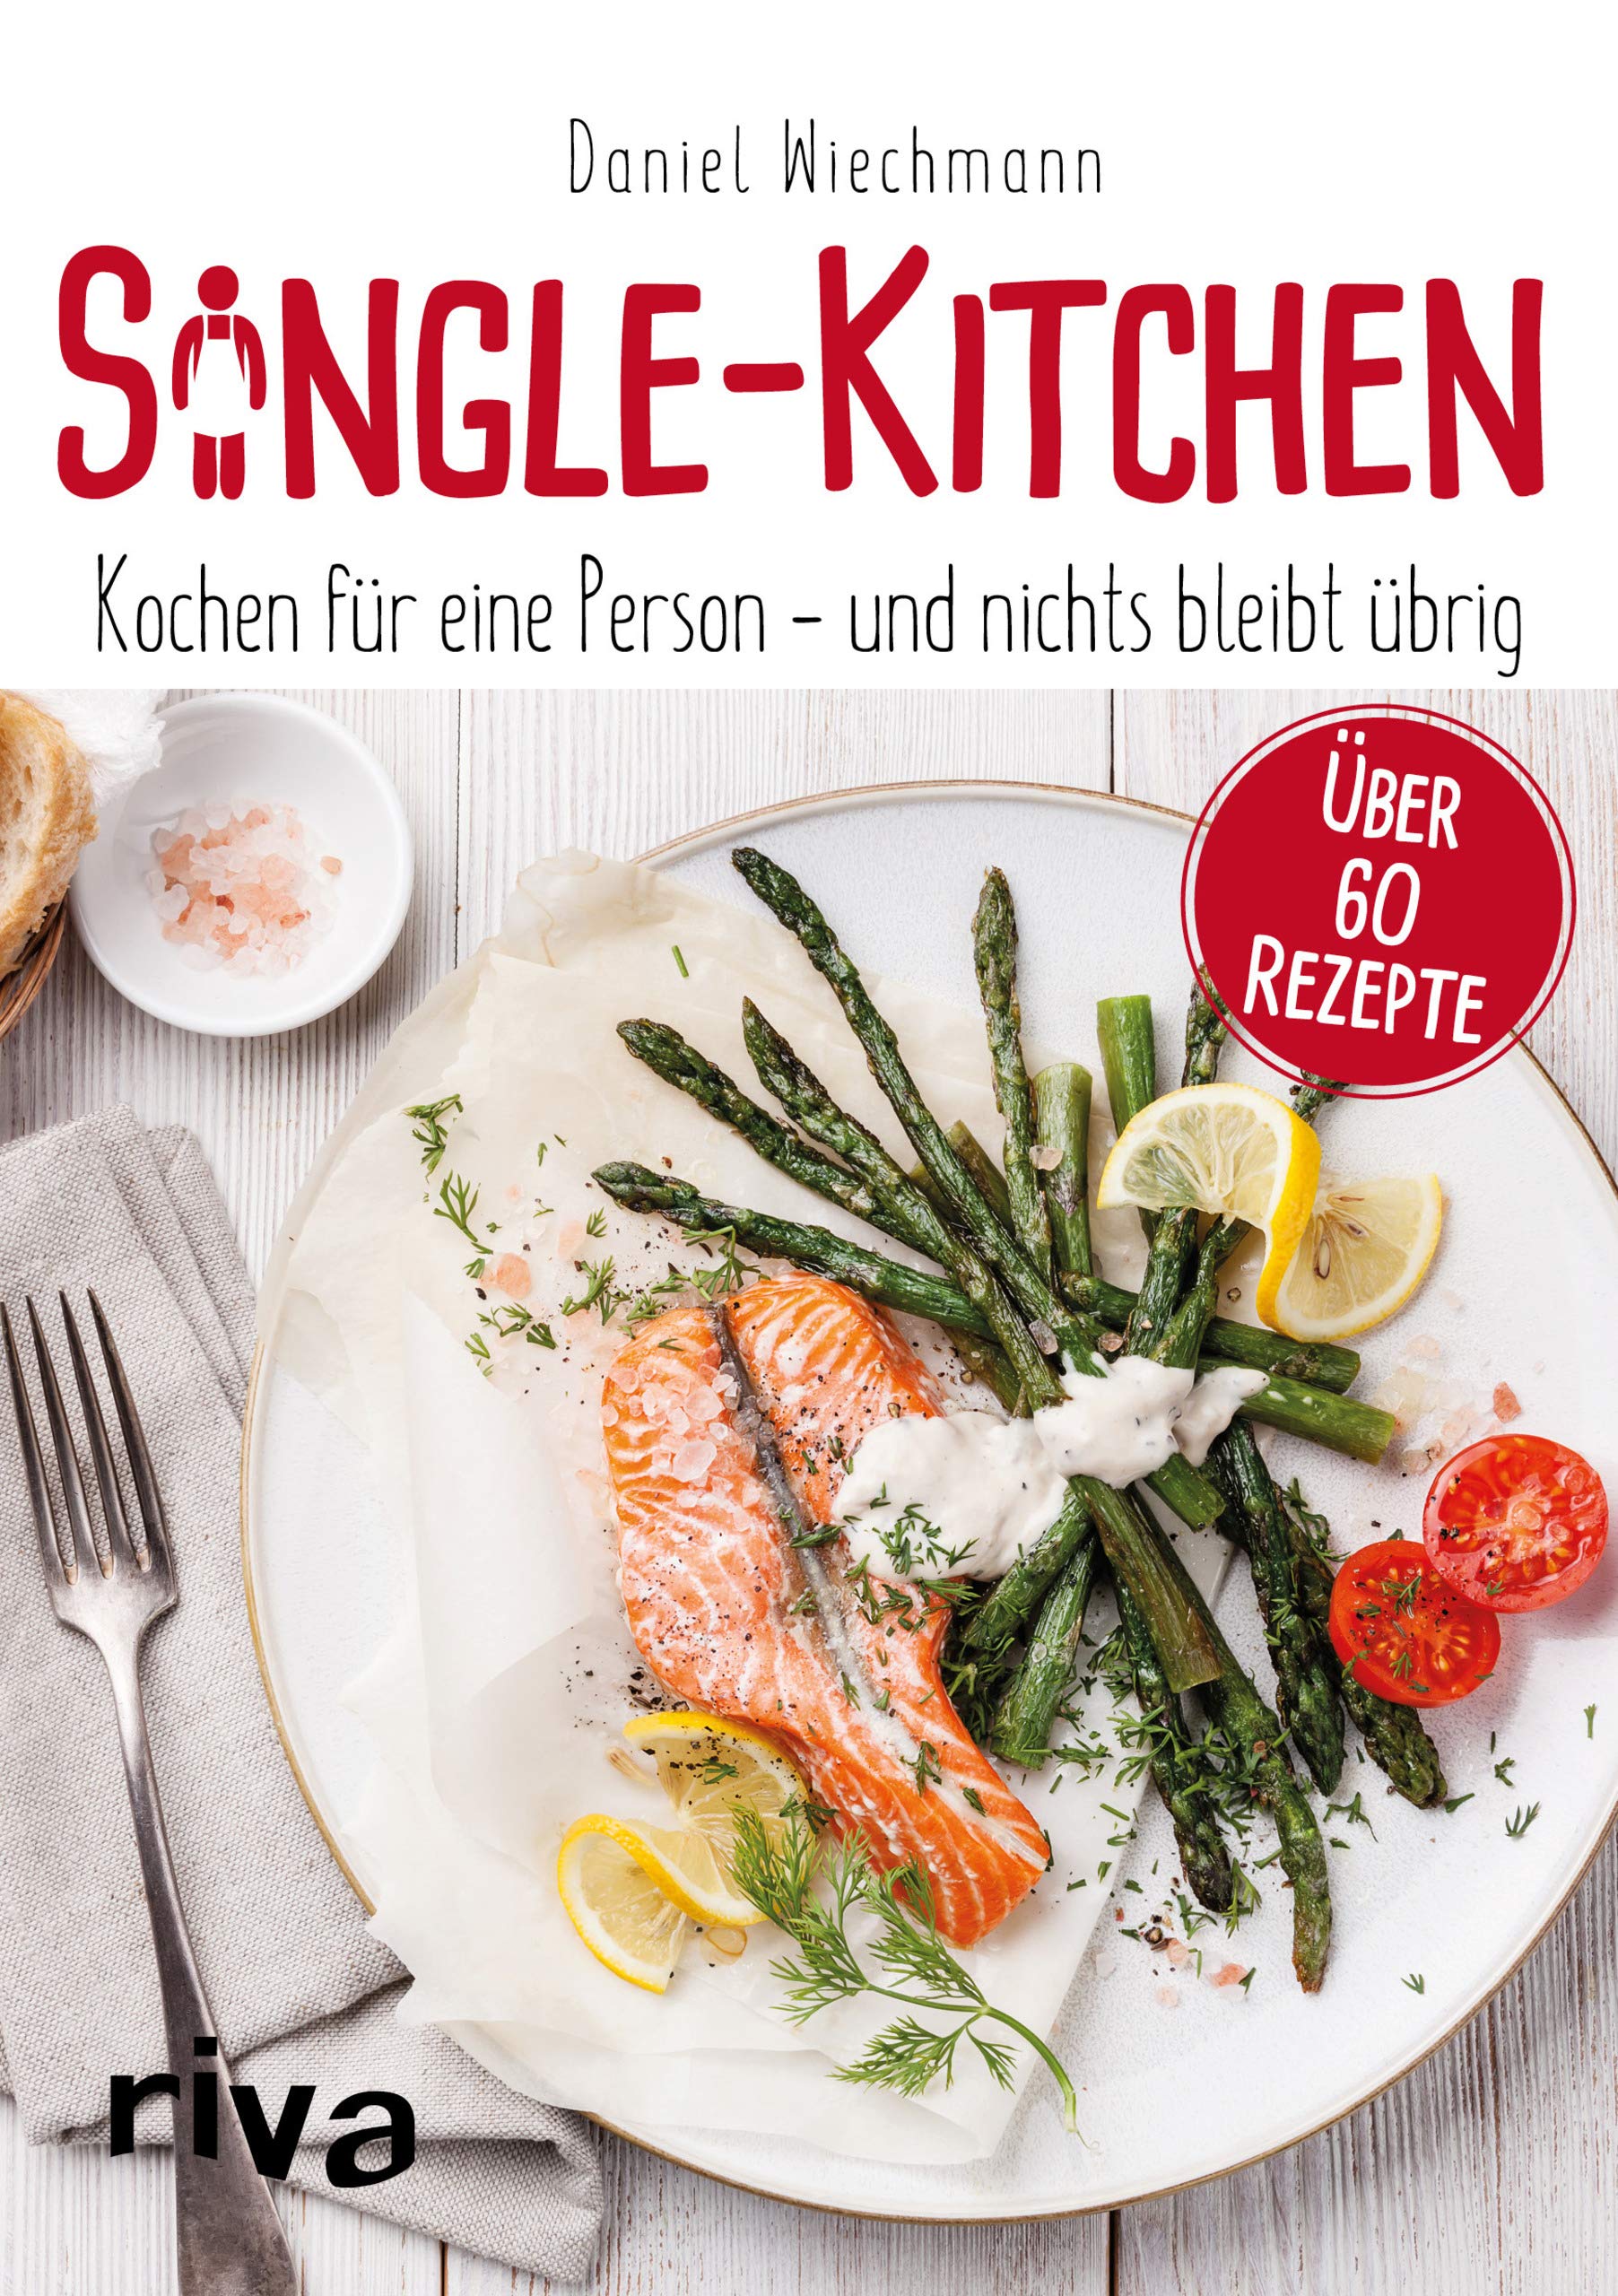 Single-Kitchen: Kochen für eine Person - und nichts bleibt übrig. Über 60 Rezepte